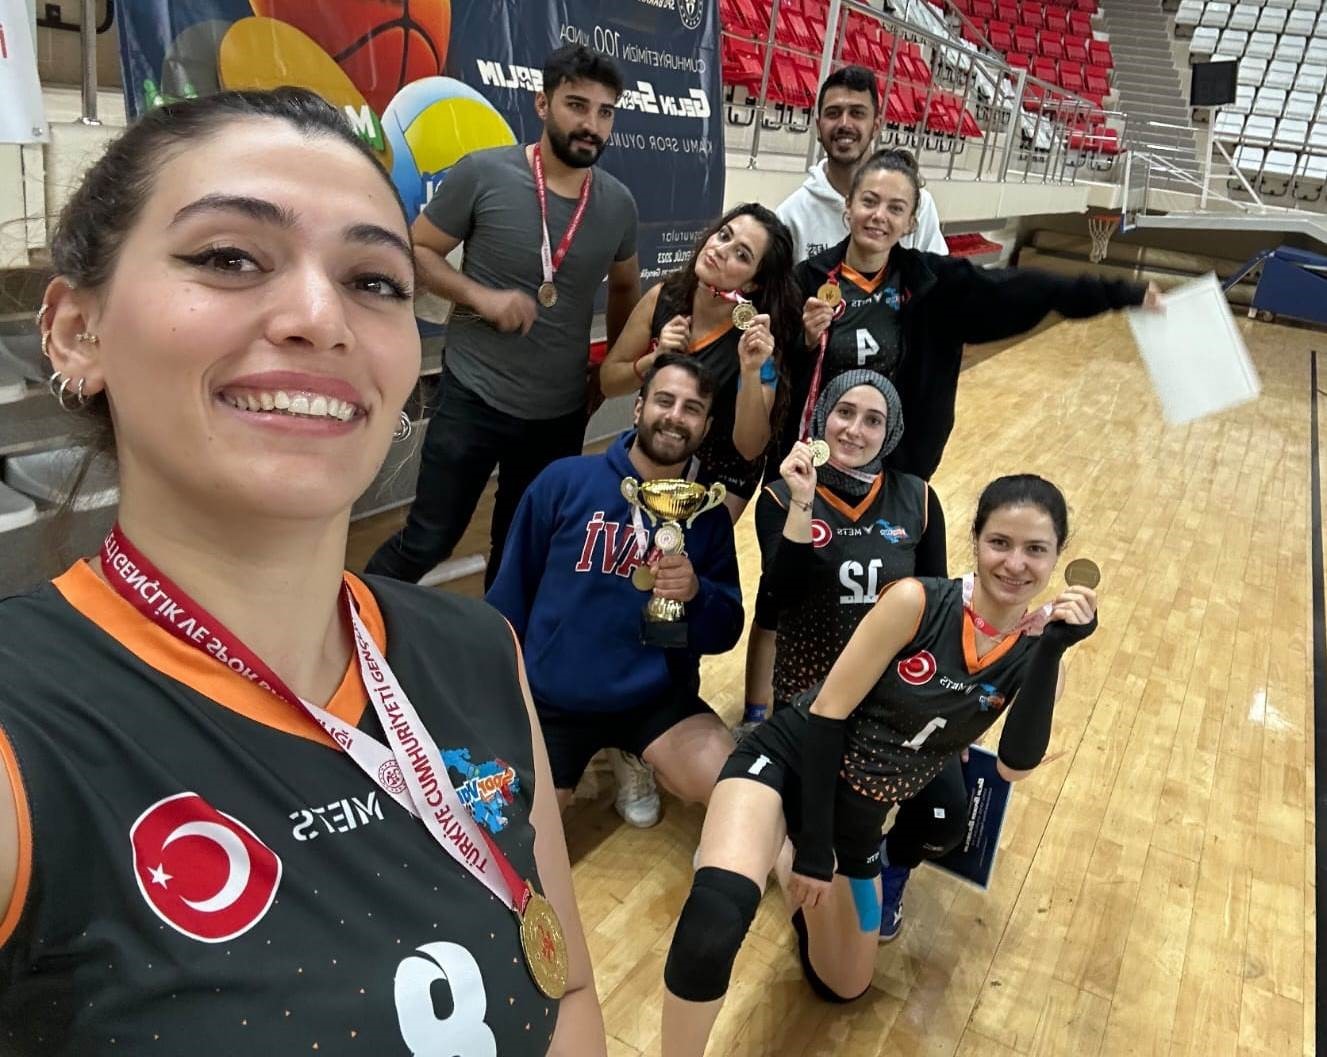 Van’ın ‘Eğitim Sultanları’ Türkiye finallerinde